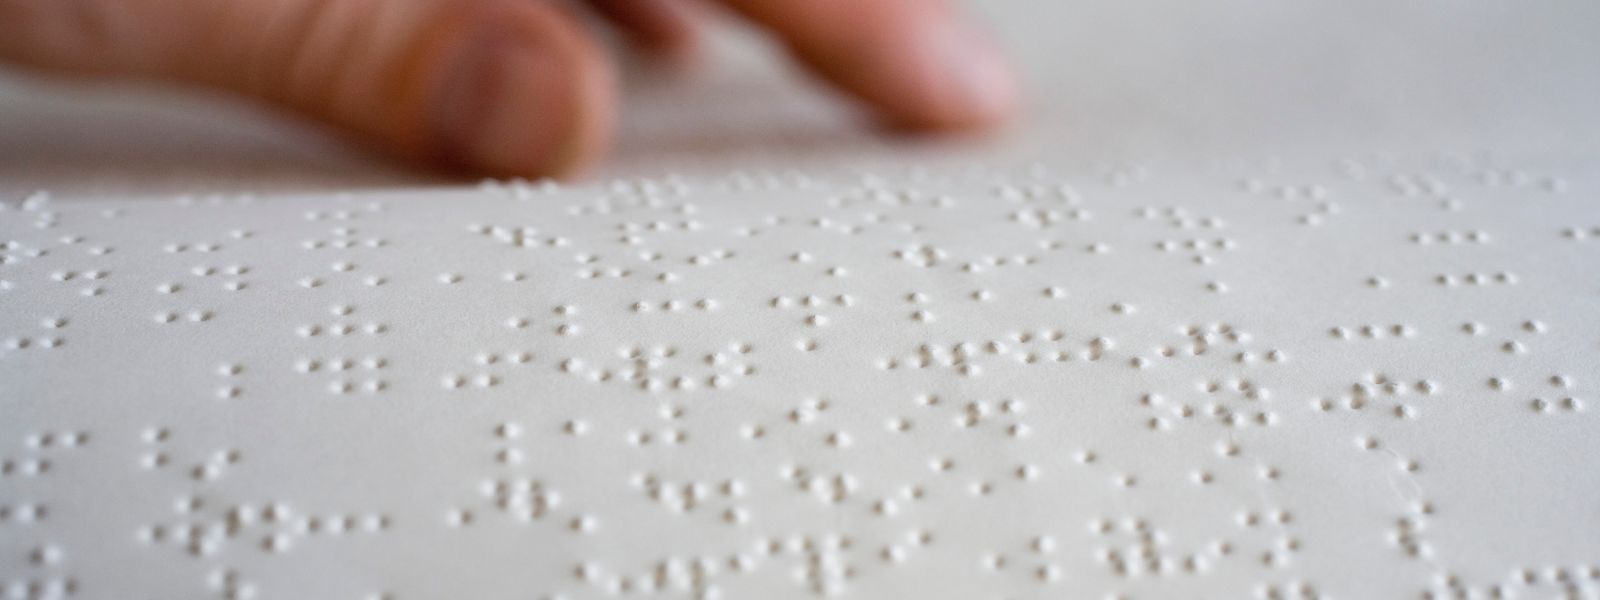 Na zdjęciu widoczna jest zbliżona perspektywa białej kartki z wypukłym pismem Braille'a. Punkty są regularnie rozmieszczone w rzędach, tworząc znaki alfabetyczne. W tle nieostro widzimy palec osoby, który dotyka tekstu, sugerując proces czytania przez dotyk. Jasne oświetlenie podkreśla wypukłość kropek, co pozwala na lepszą percepcję wzrokową tekstu w piśmie Braille'a.